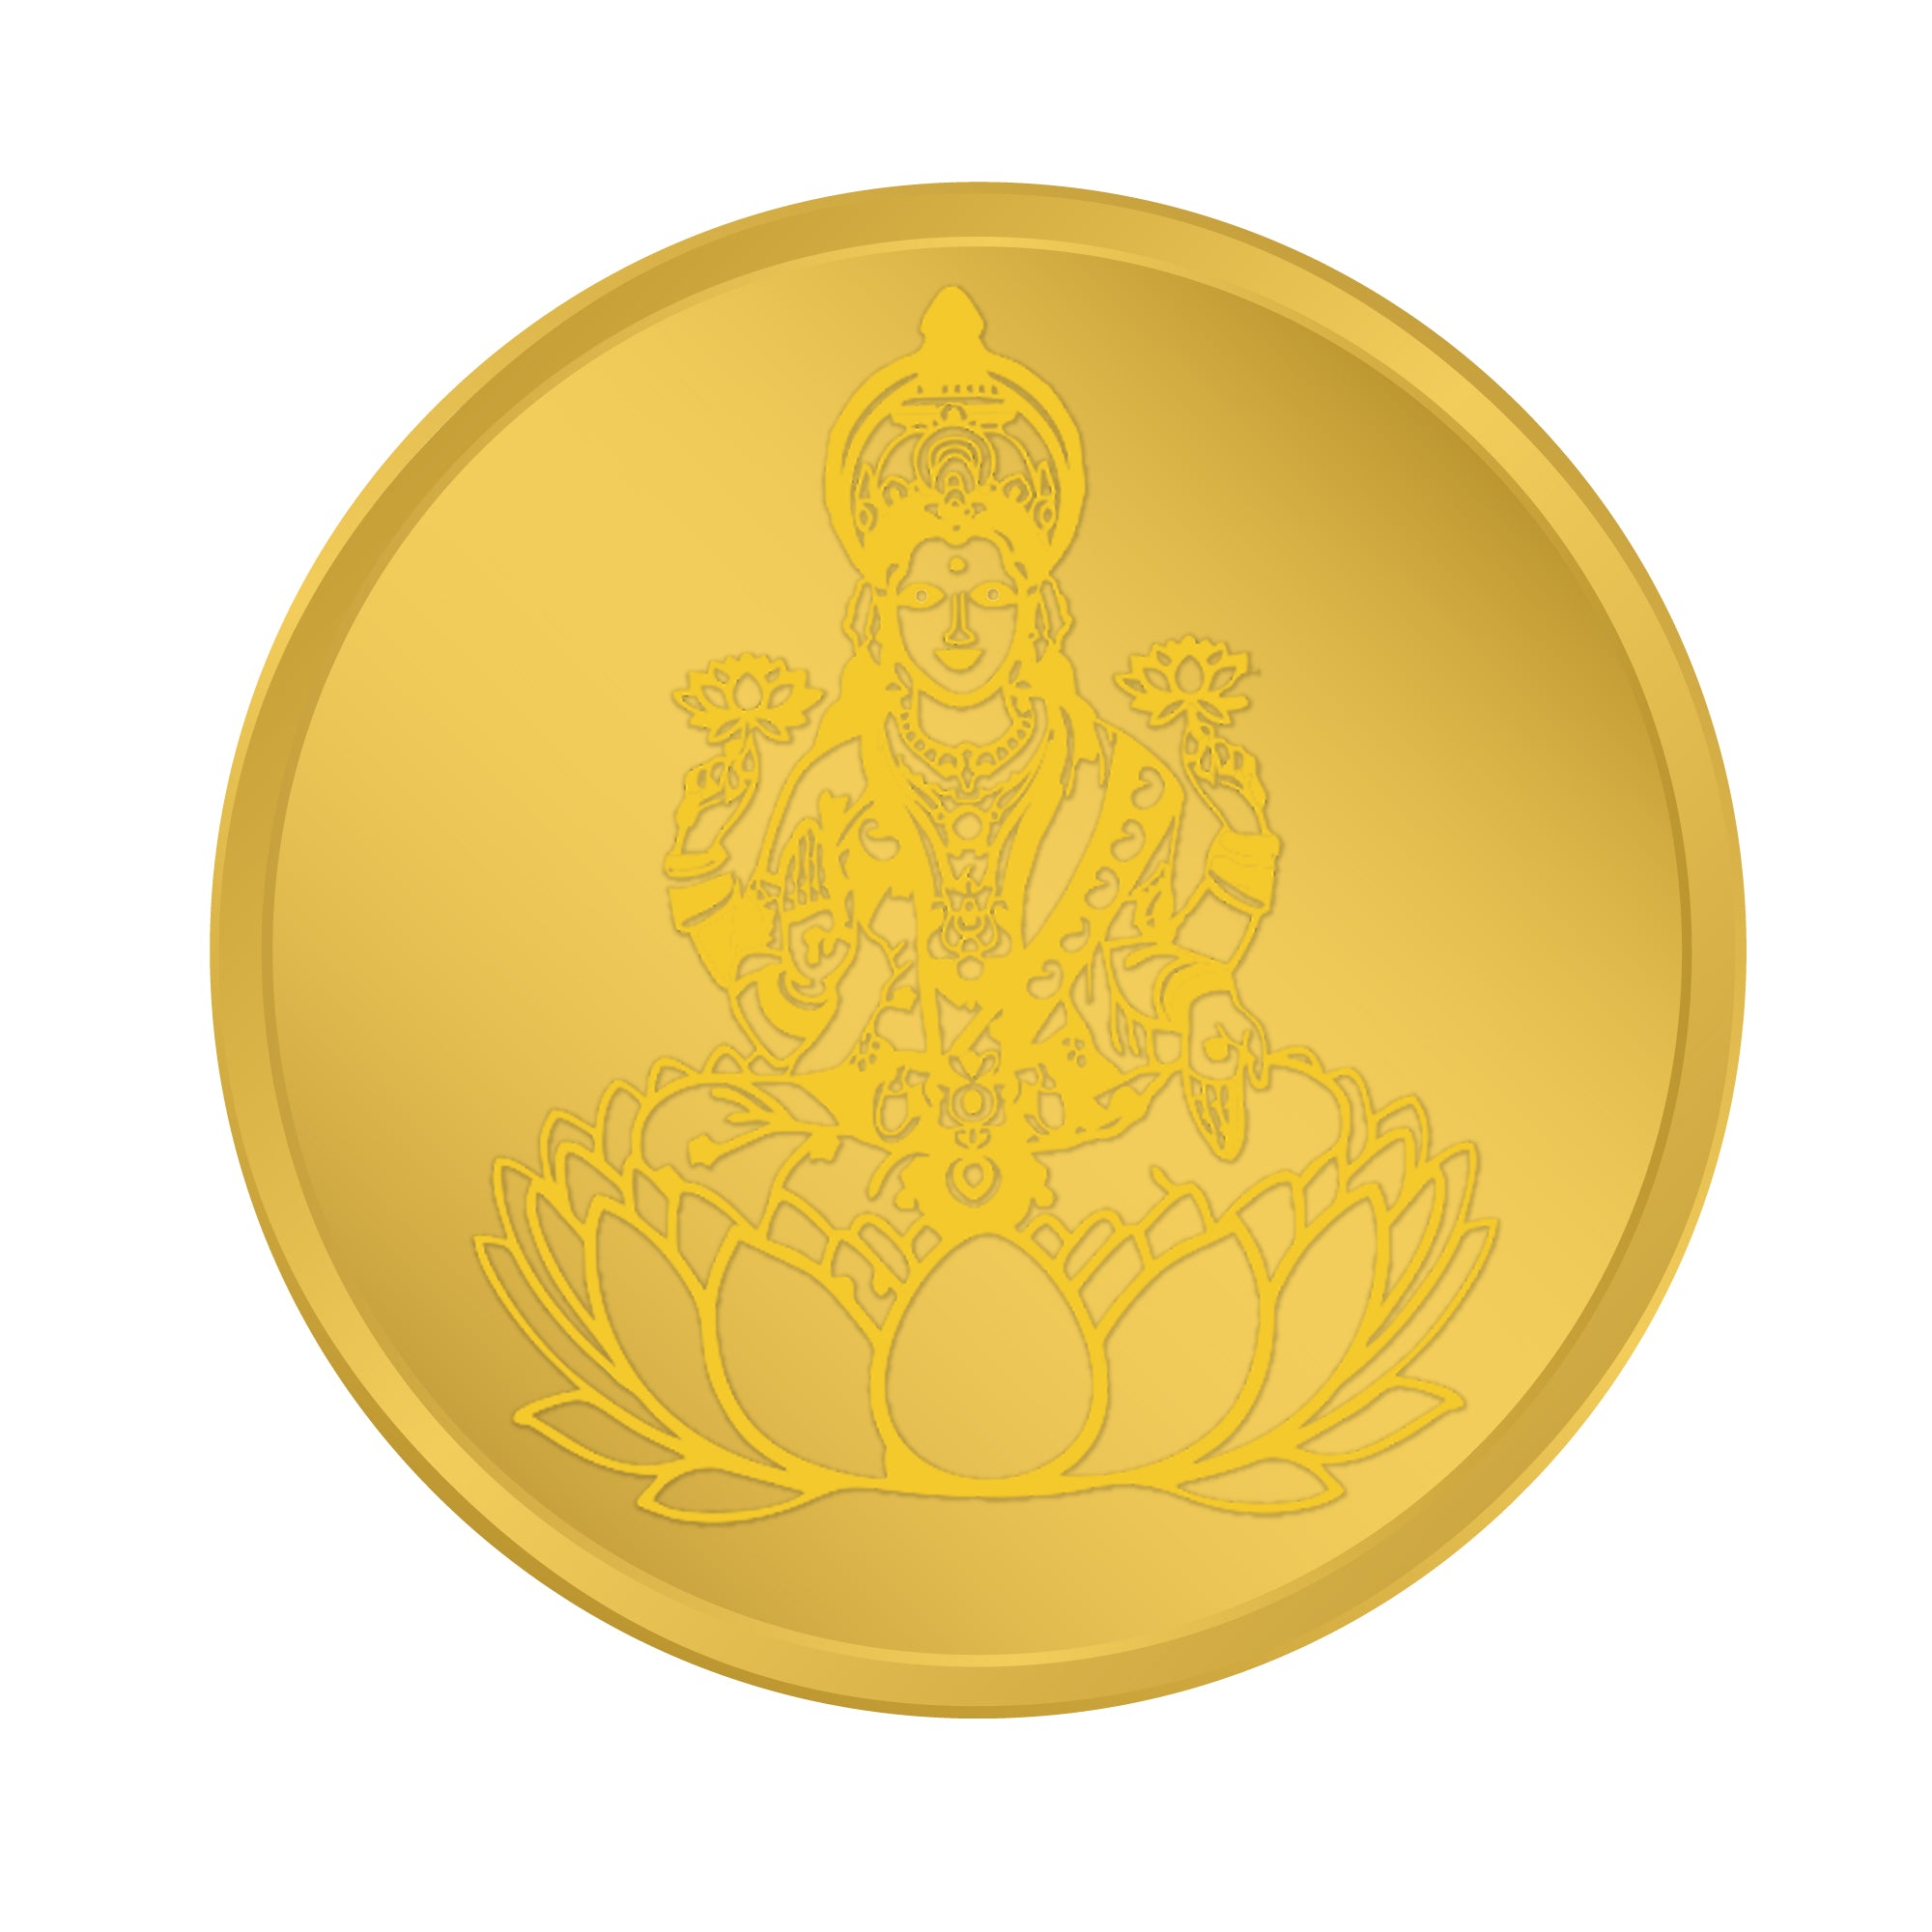 Goddess Laxmi Ji 0.250 24K 999 Gold Coin